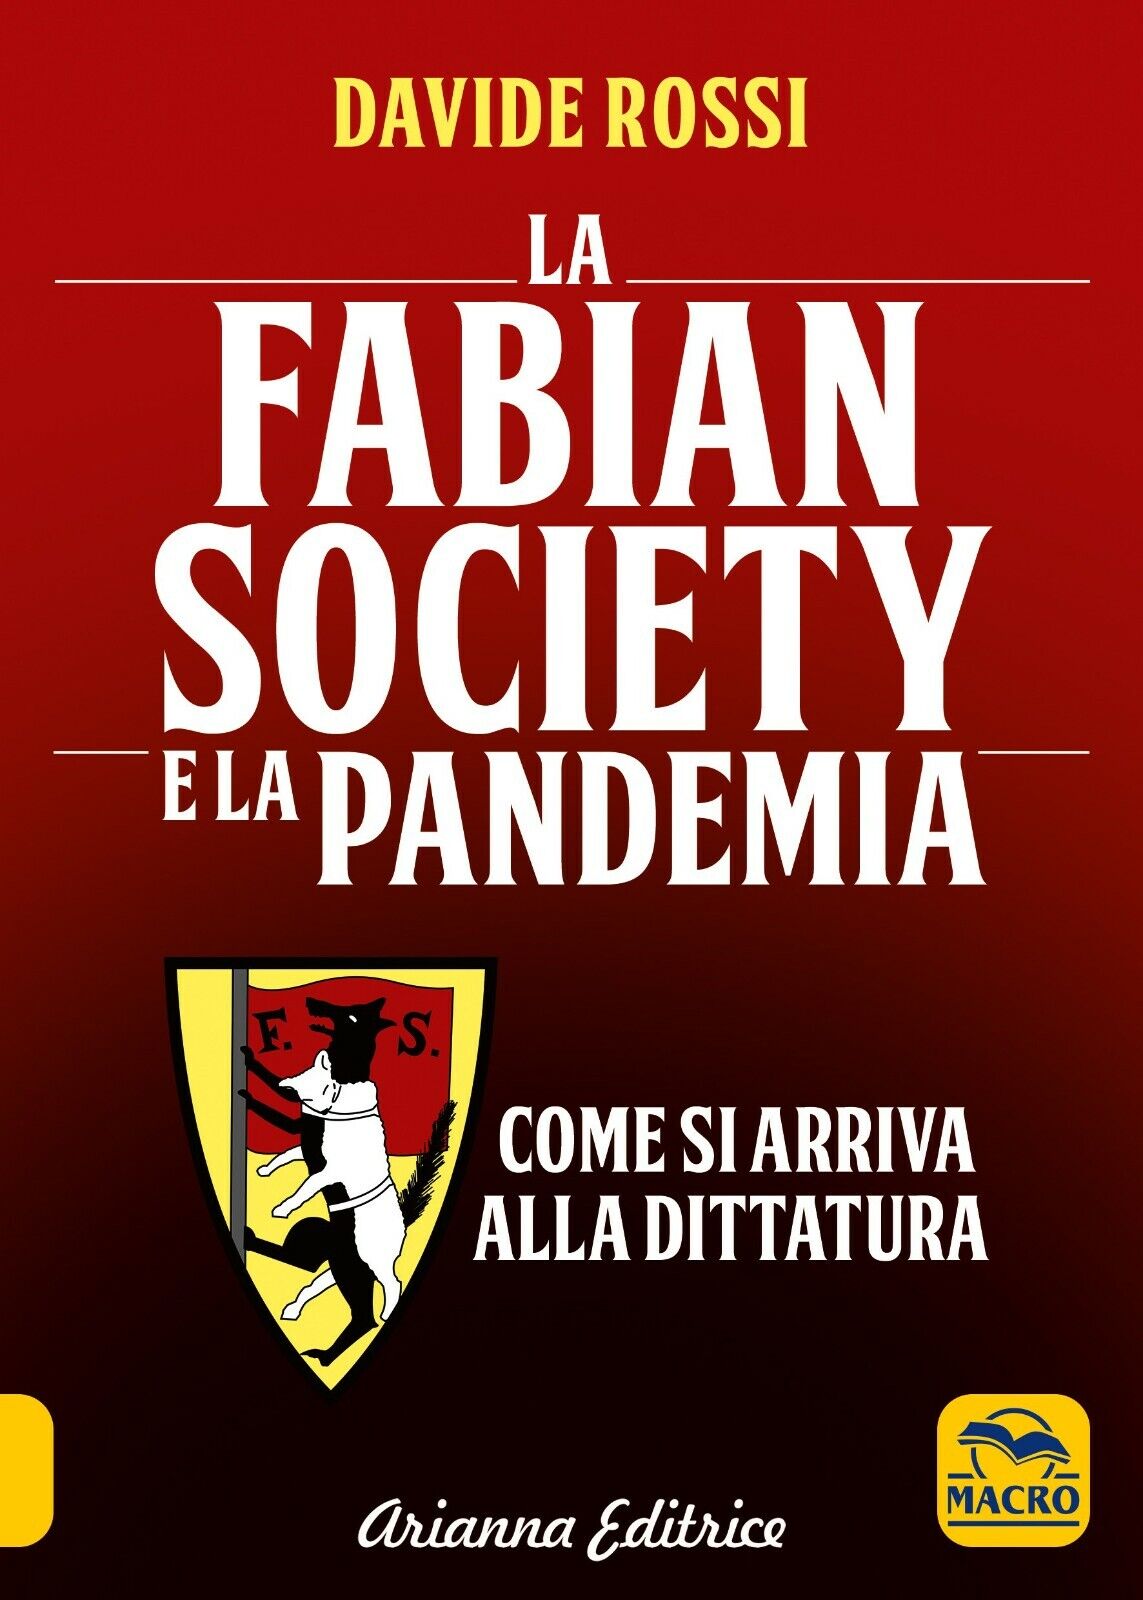 La Fabian Society e la pandemia. Come si arriva alla dittatura di Davide Rossi, 